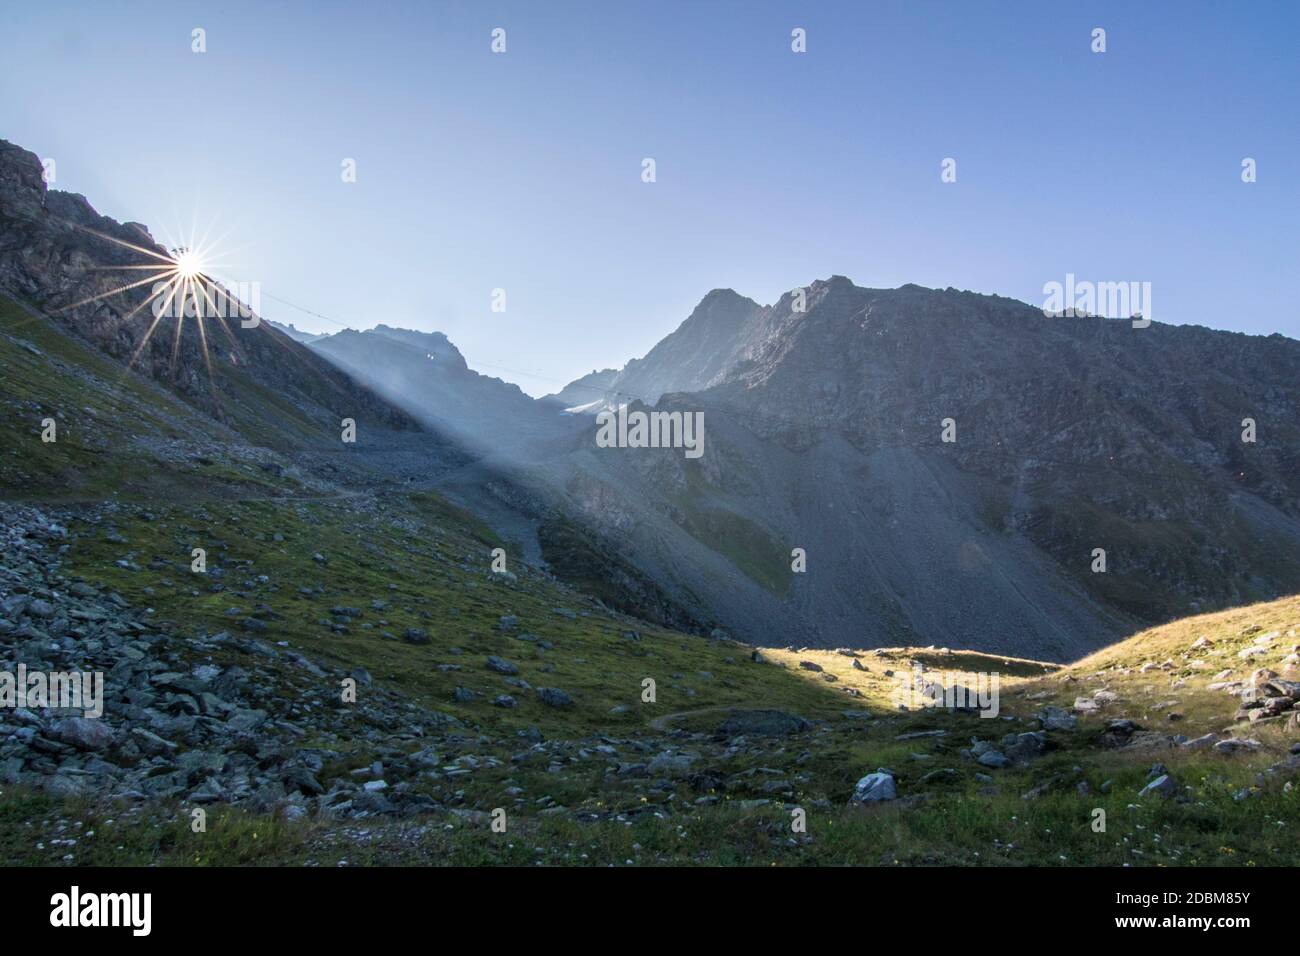 Alpes suisses, haute route, canton du Valais, Suisse Banque D'Images